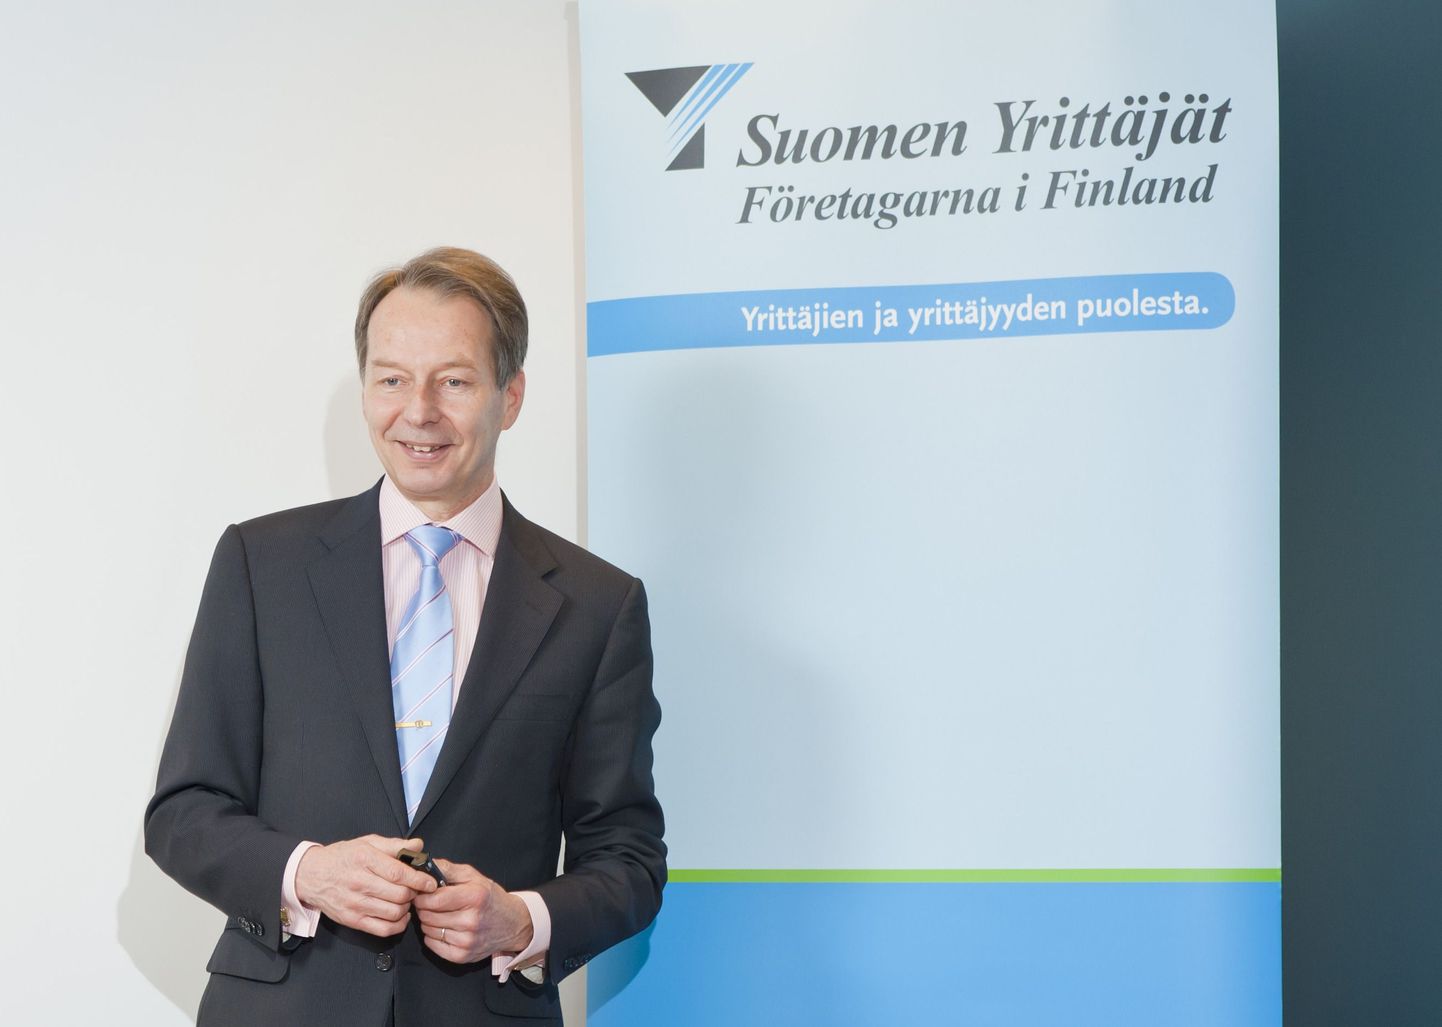 Soome ettevõtjaid ühendava keskliidu Suomen Yrittäjät juhi Jussi Järventausi sõnul peab valitsus kaaluma eestilt eeskuju võtmist ettevõtete maksustamisel.